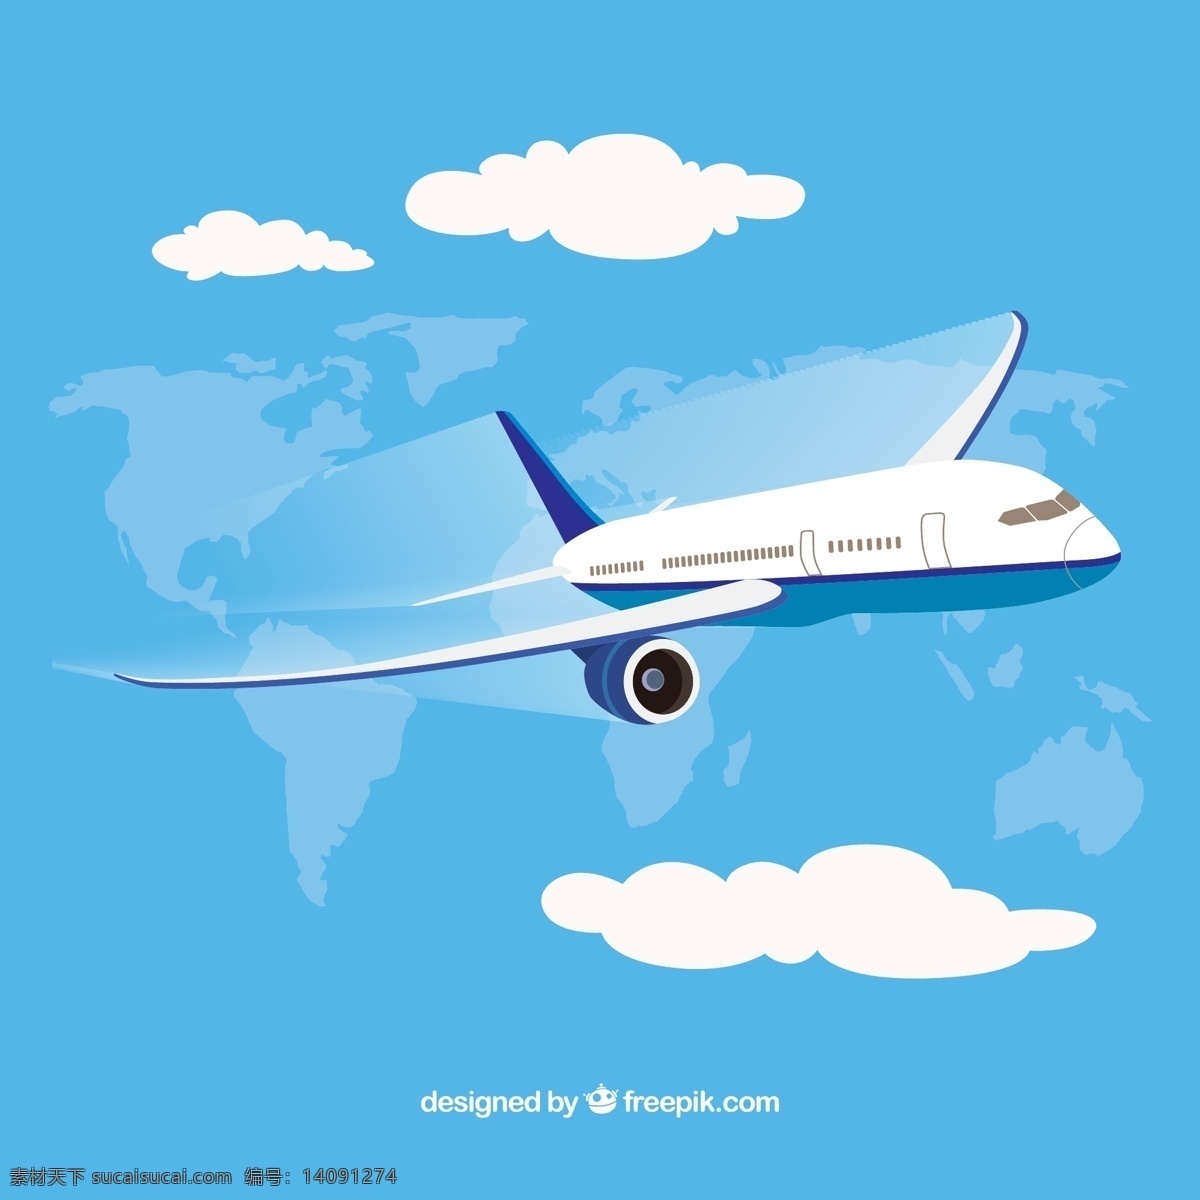 天空 中 航空 飞机 矢量 飞行 环球 航空飞机 云朵 世界地图 客机 矢量图